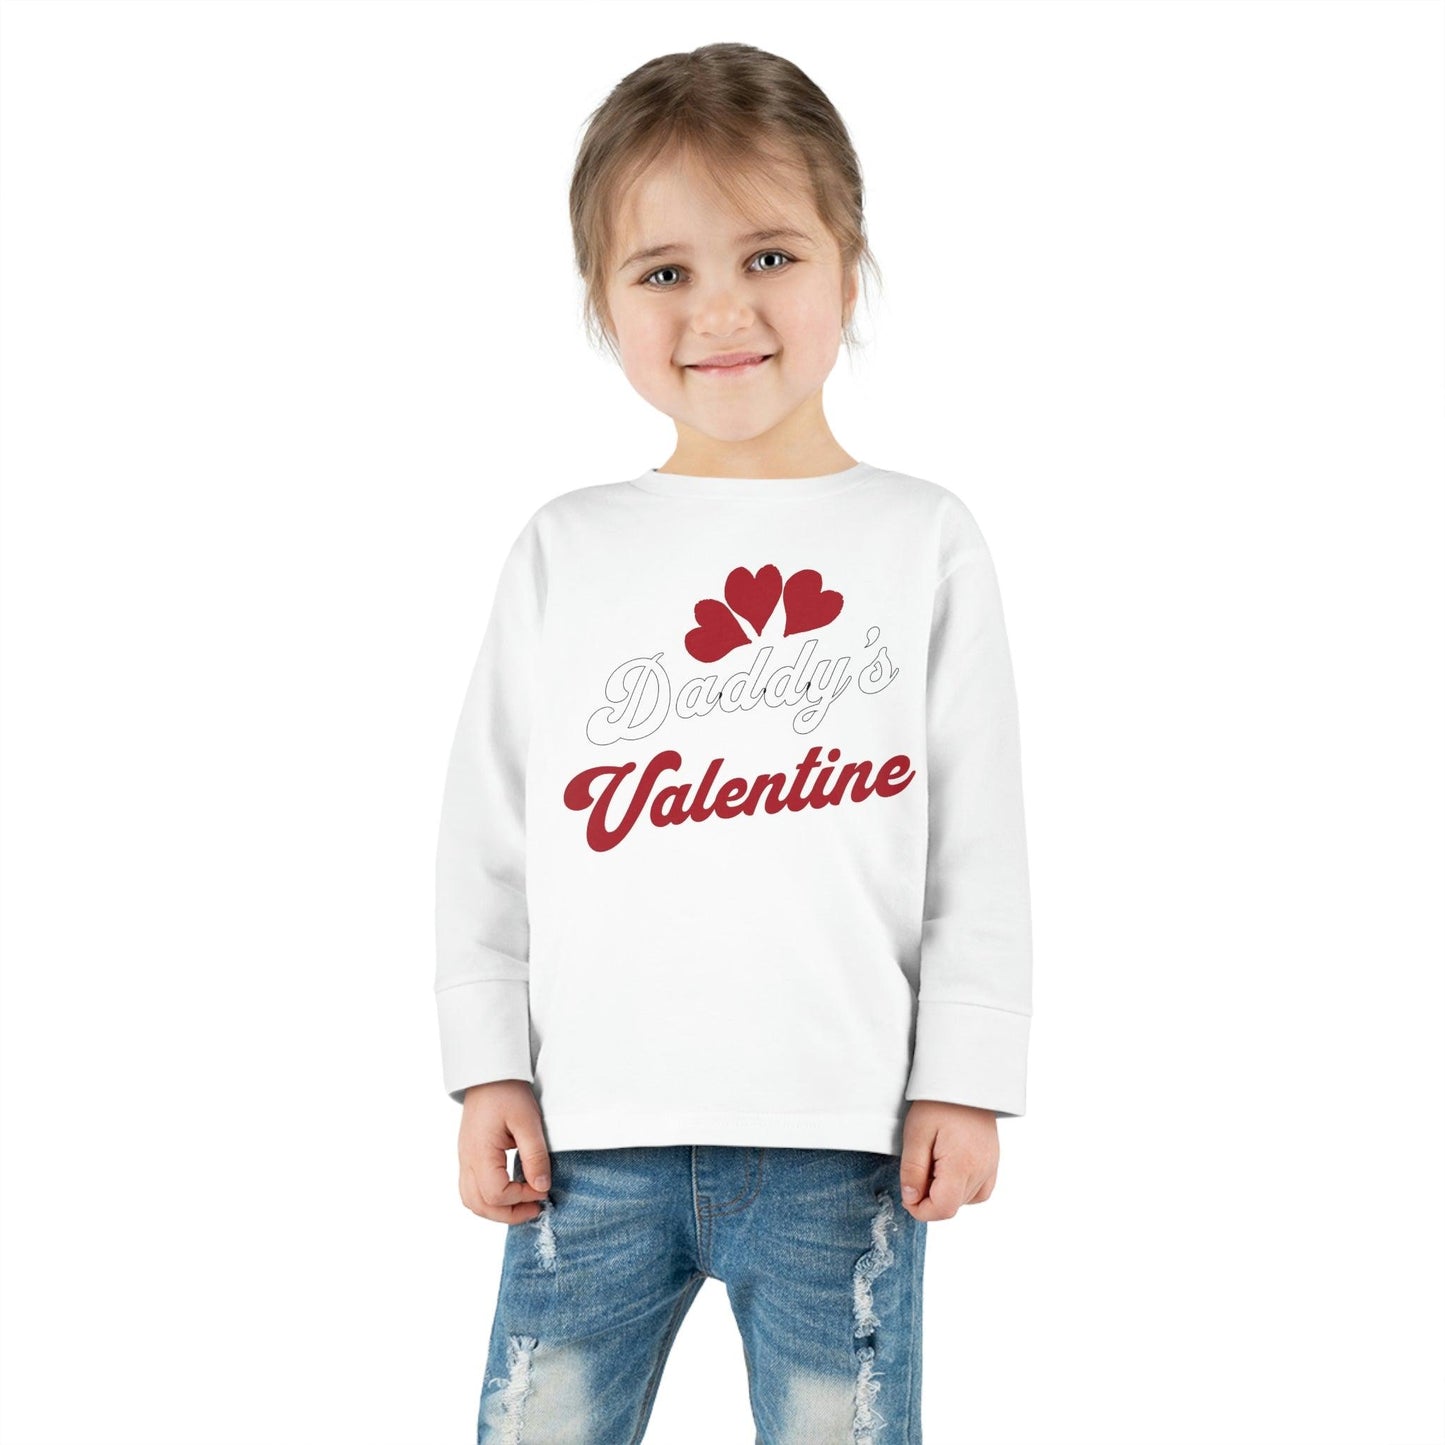 Kids Valentine shirt - Toddler Valentine Tee